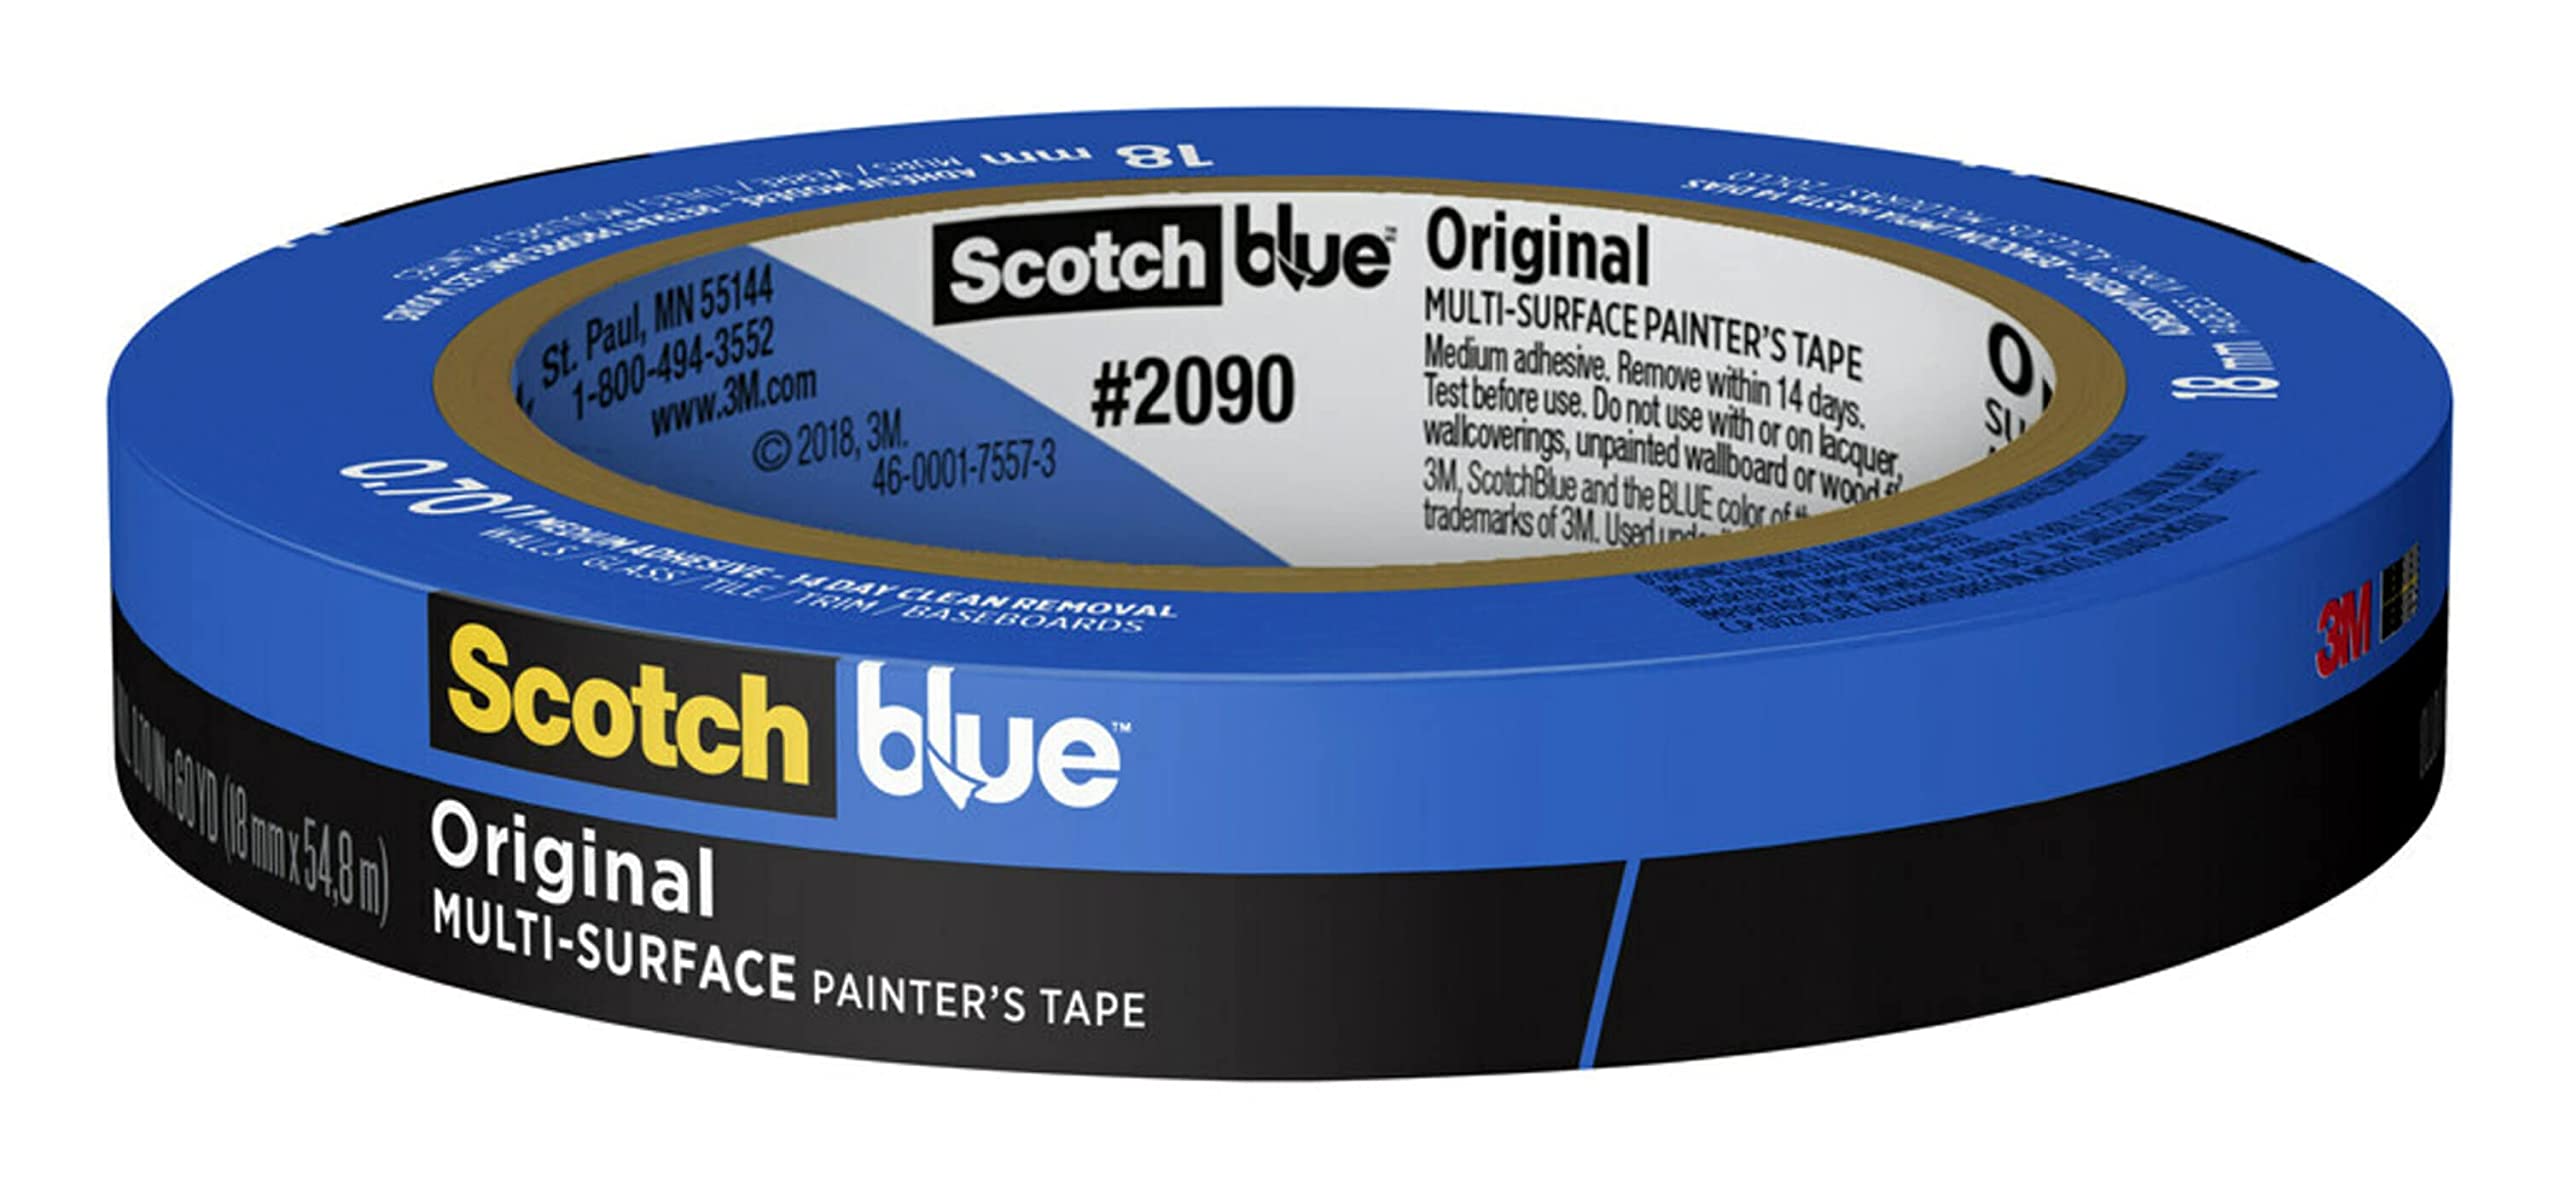 Scotch الشريط الأزرق الأصلي متعدد الأسطح الرسام...